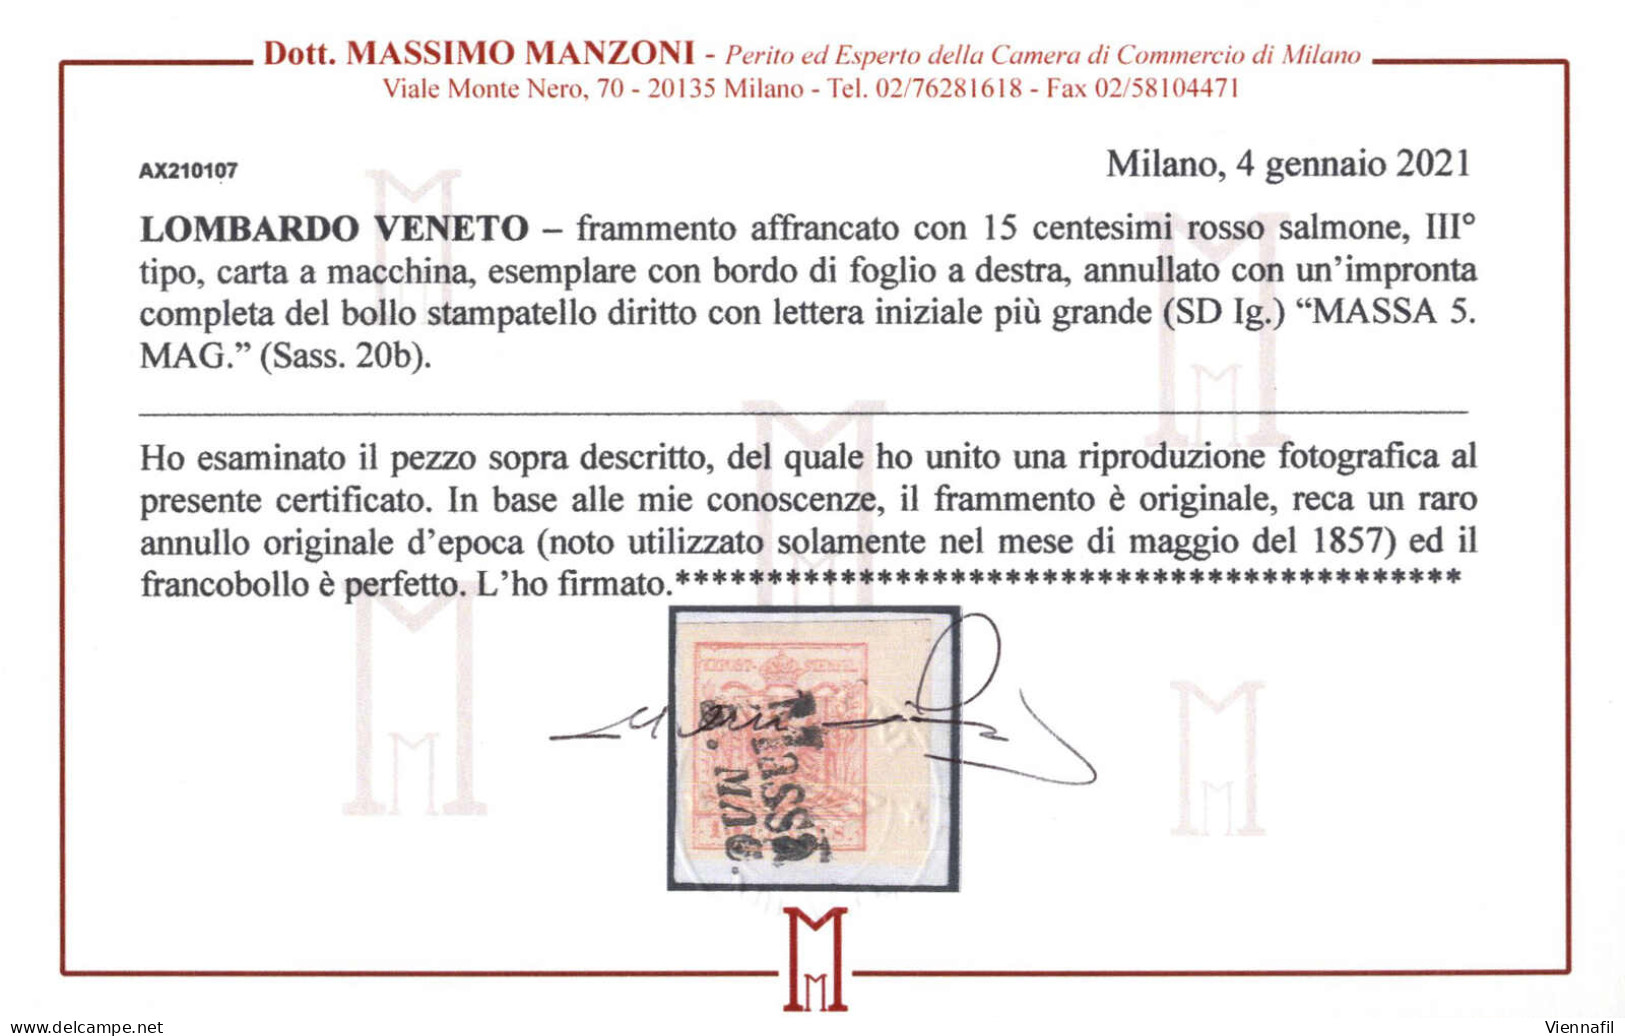 Piece Massa, SD Lg. Punti R2, Frammento Del 5.5 Affrancato Con 15 Cent. Rosso Salmone III Tipo Carta A Macchina, Certifi - Lombardy-Venetia